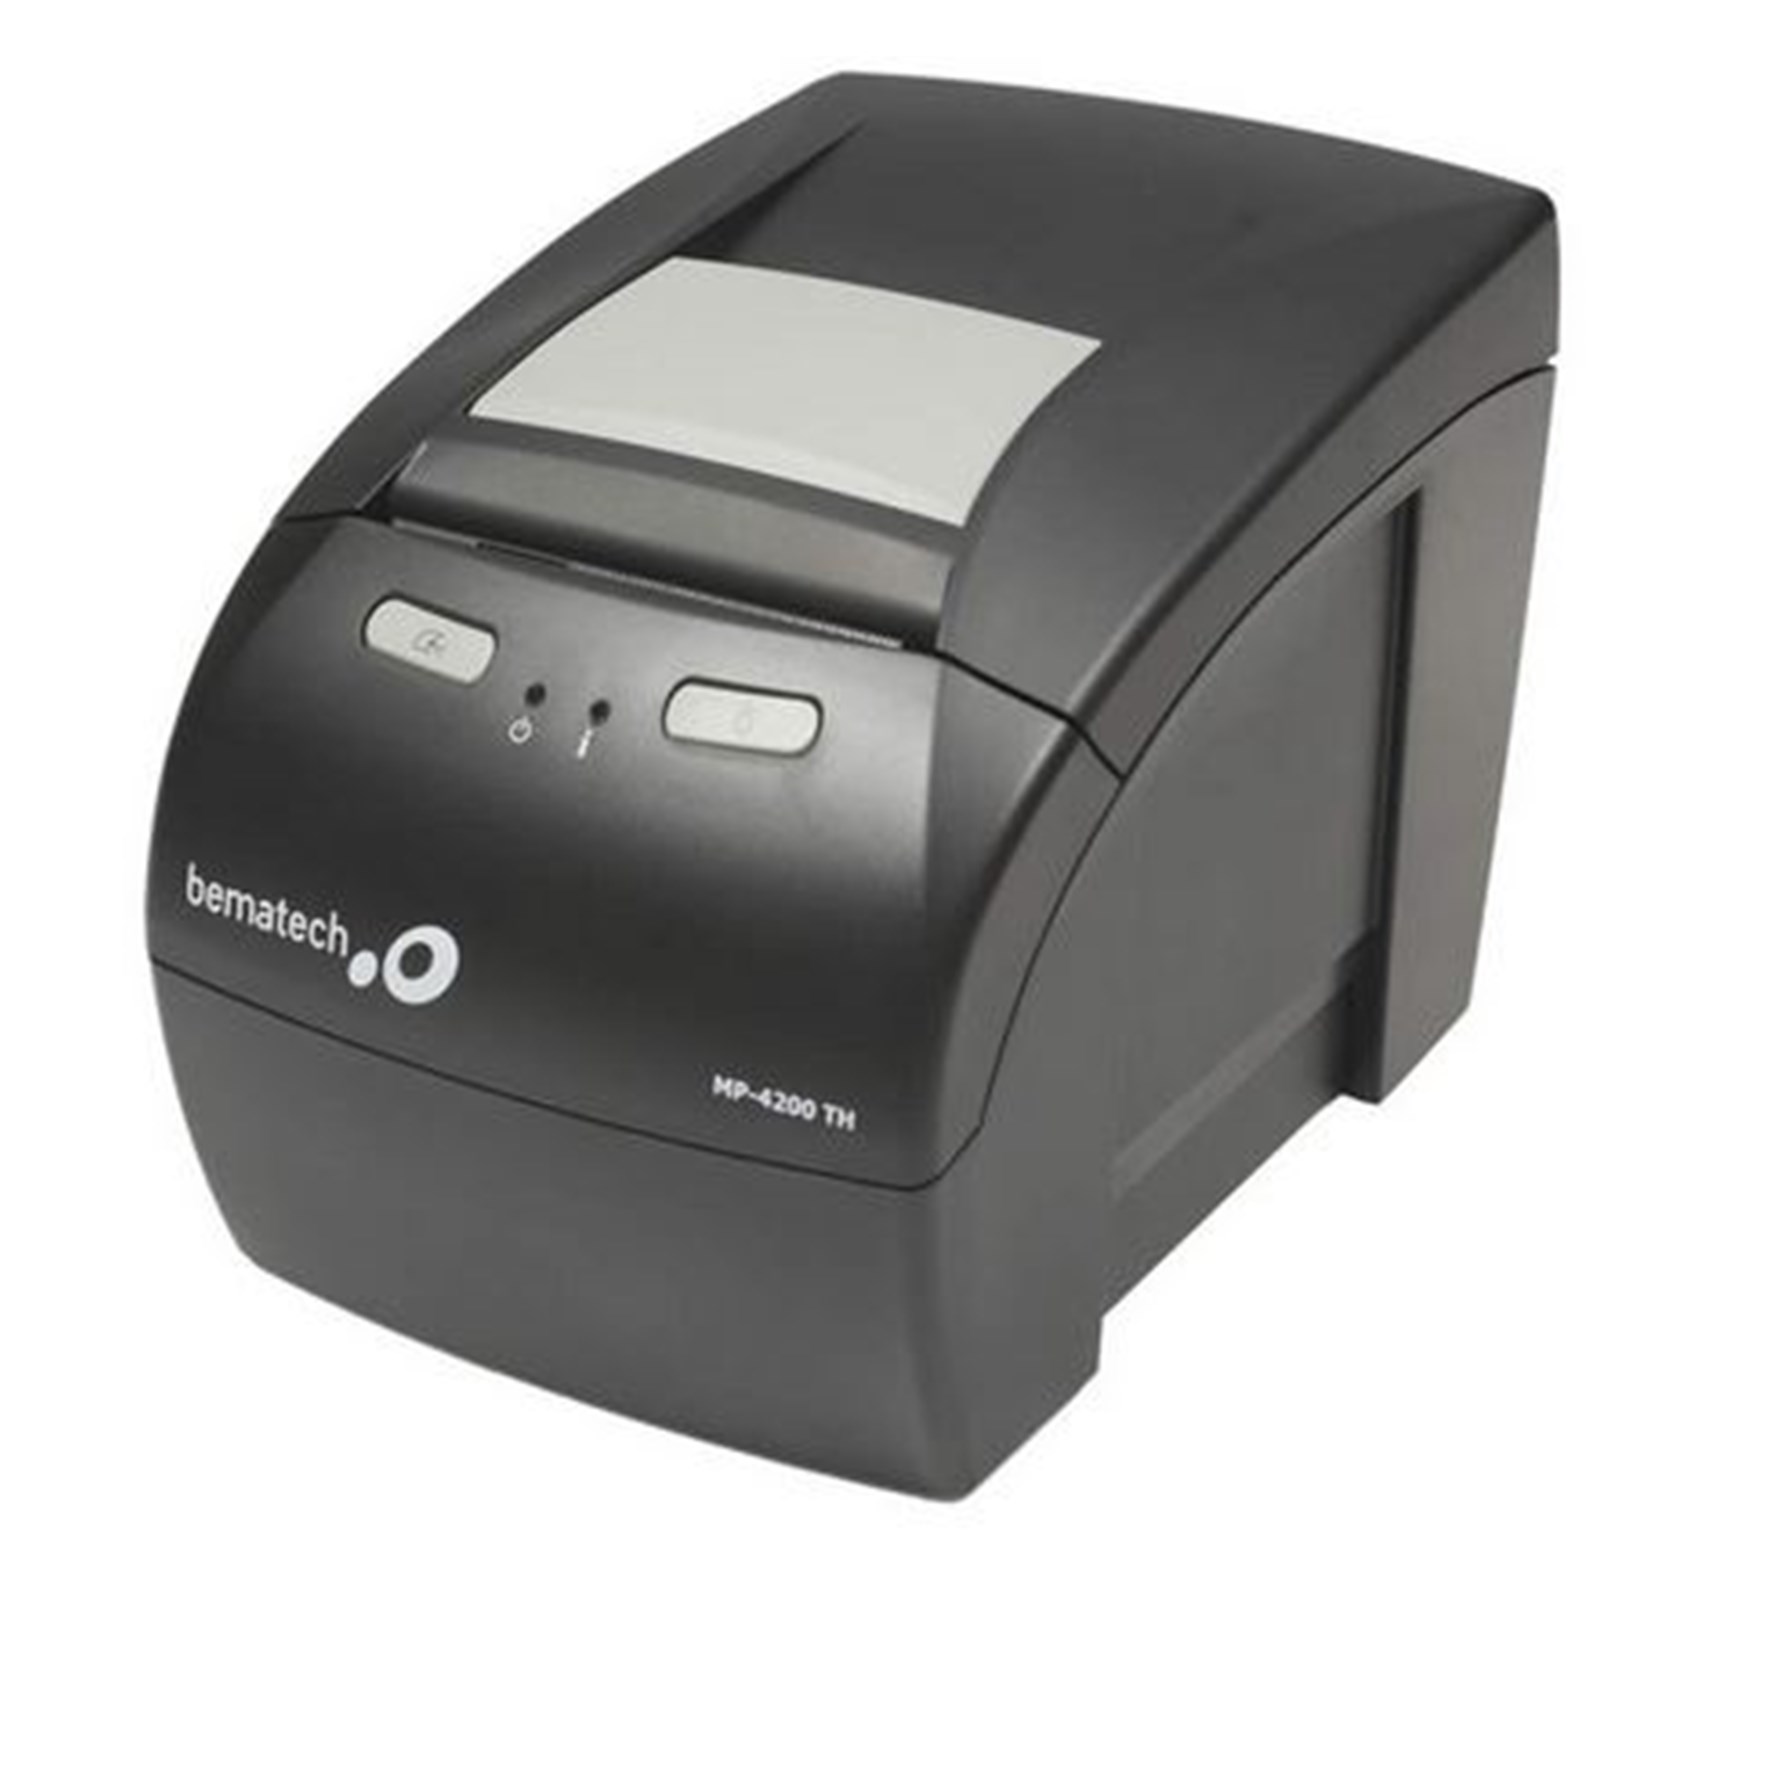 Impressora Não Fiscal MP4200 ETH Bematech